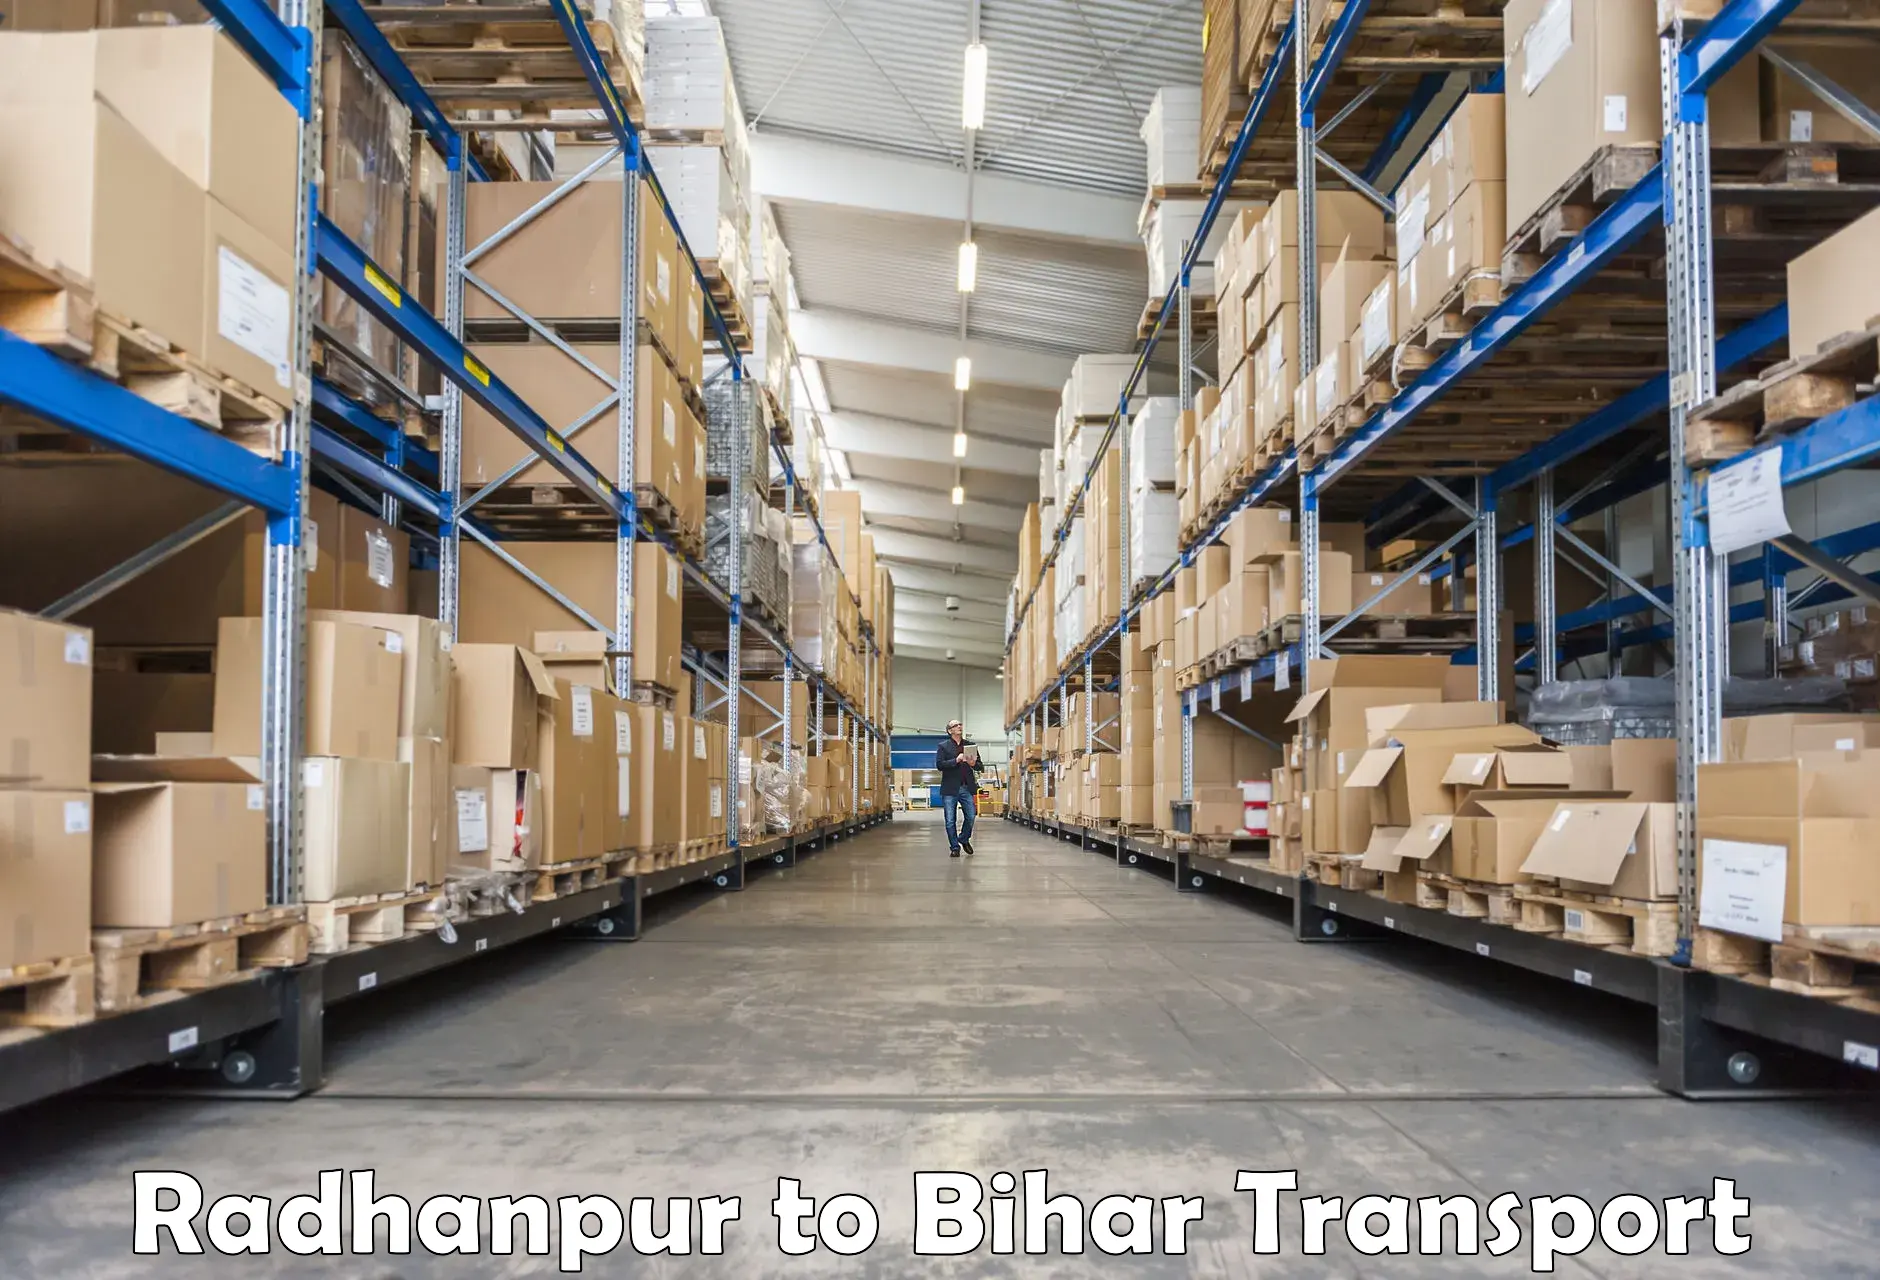 Online transport booking Radhanpur to Motihari